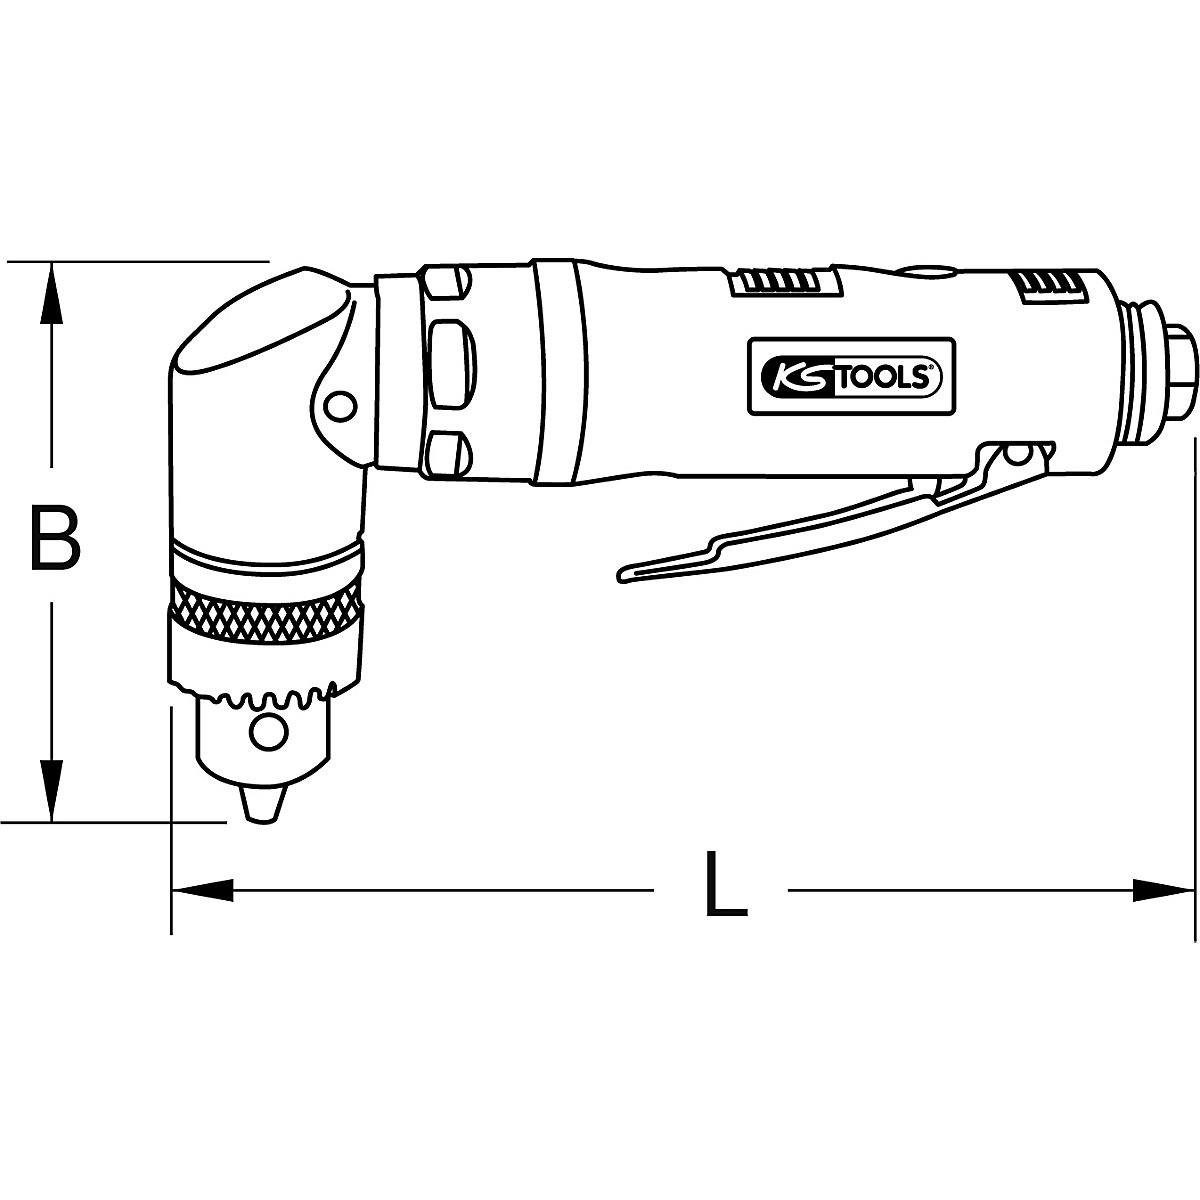 Taladradora angular de aire comprimido – KS Tools (Imagen del producto 6)-5